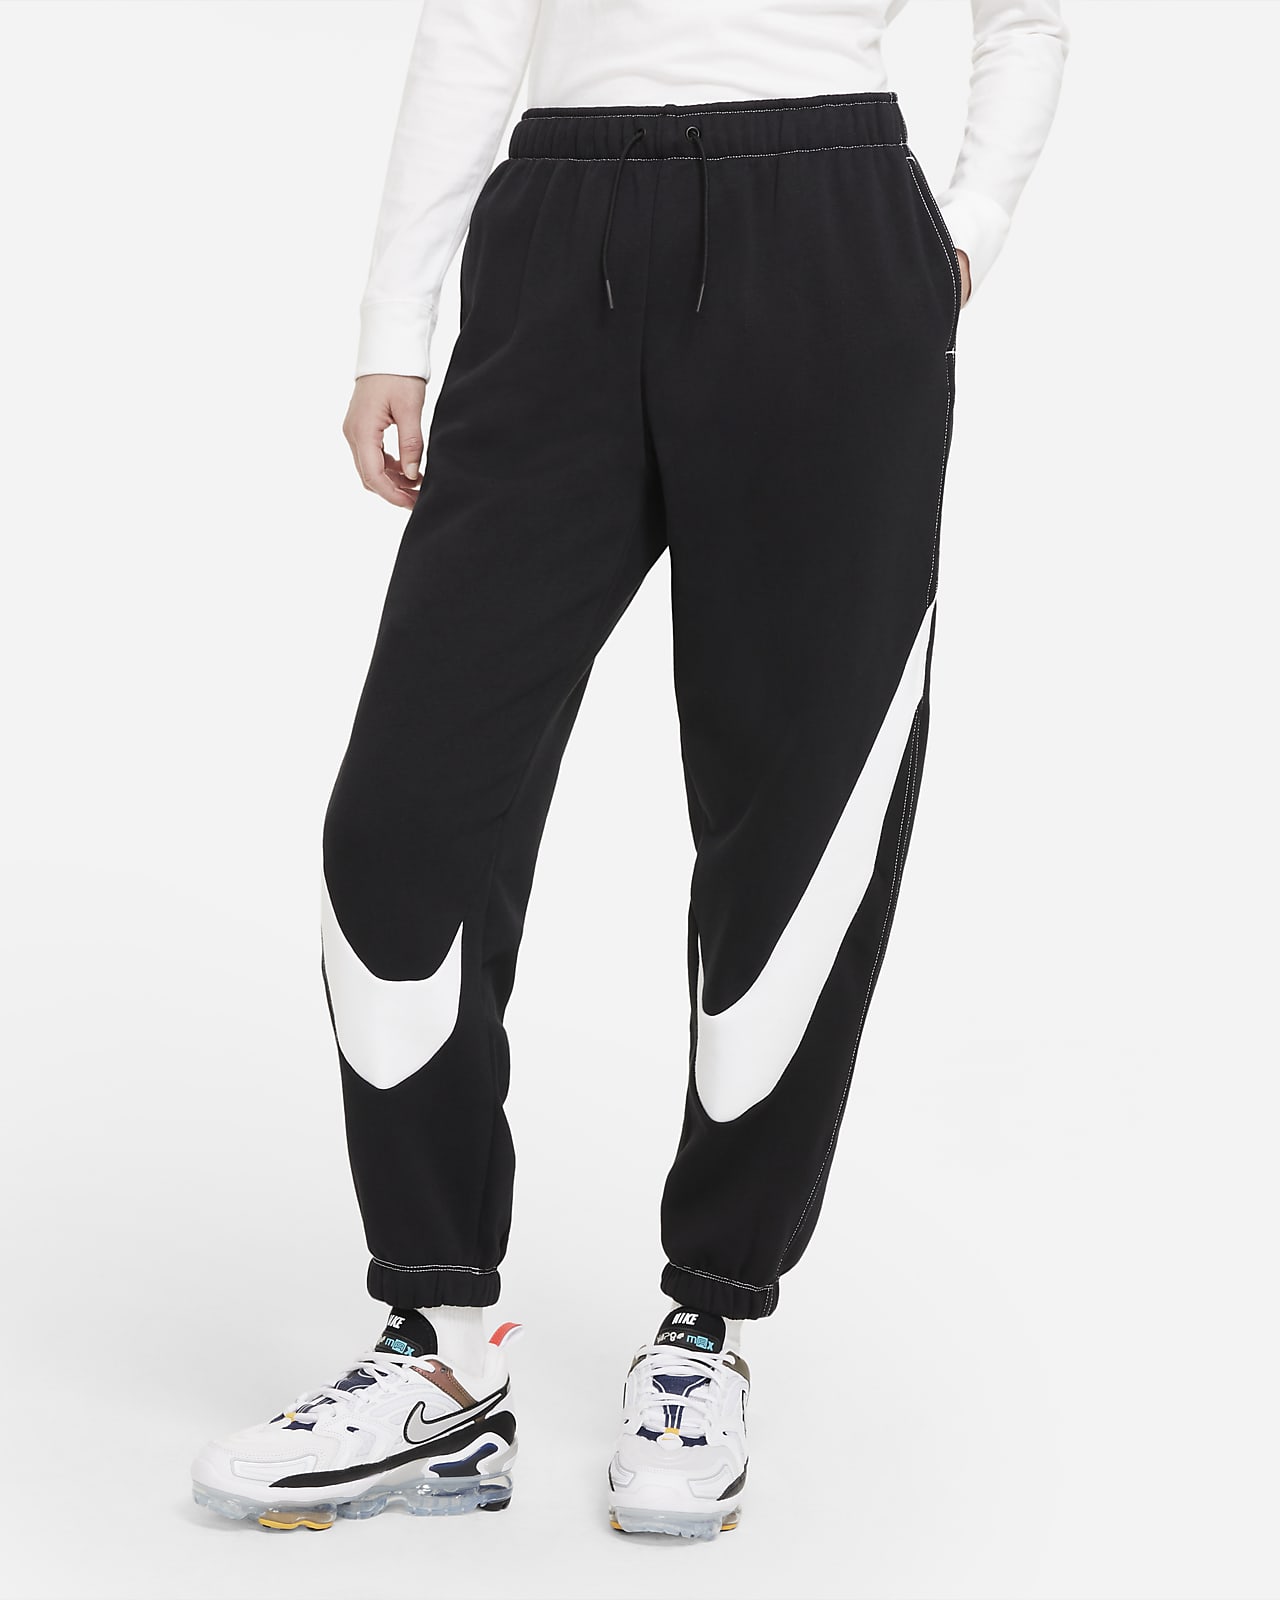 Pantalon de jogging Easy en tissu Fleece Nike Sportswear Swoosh pour Femme